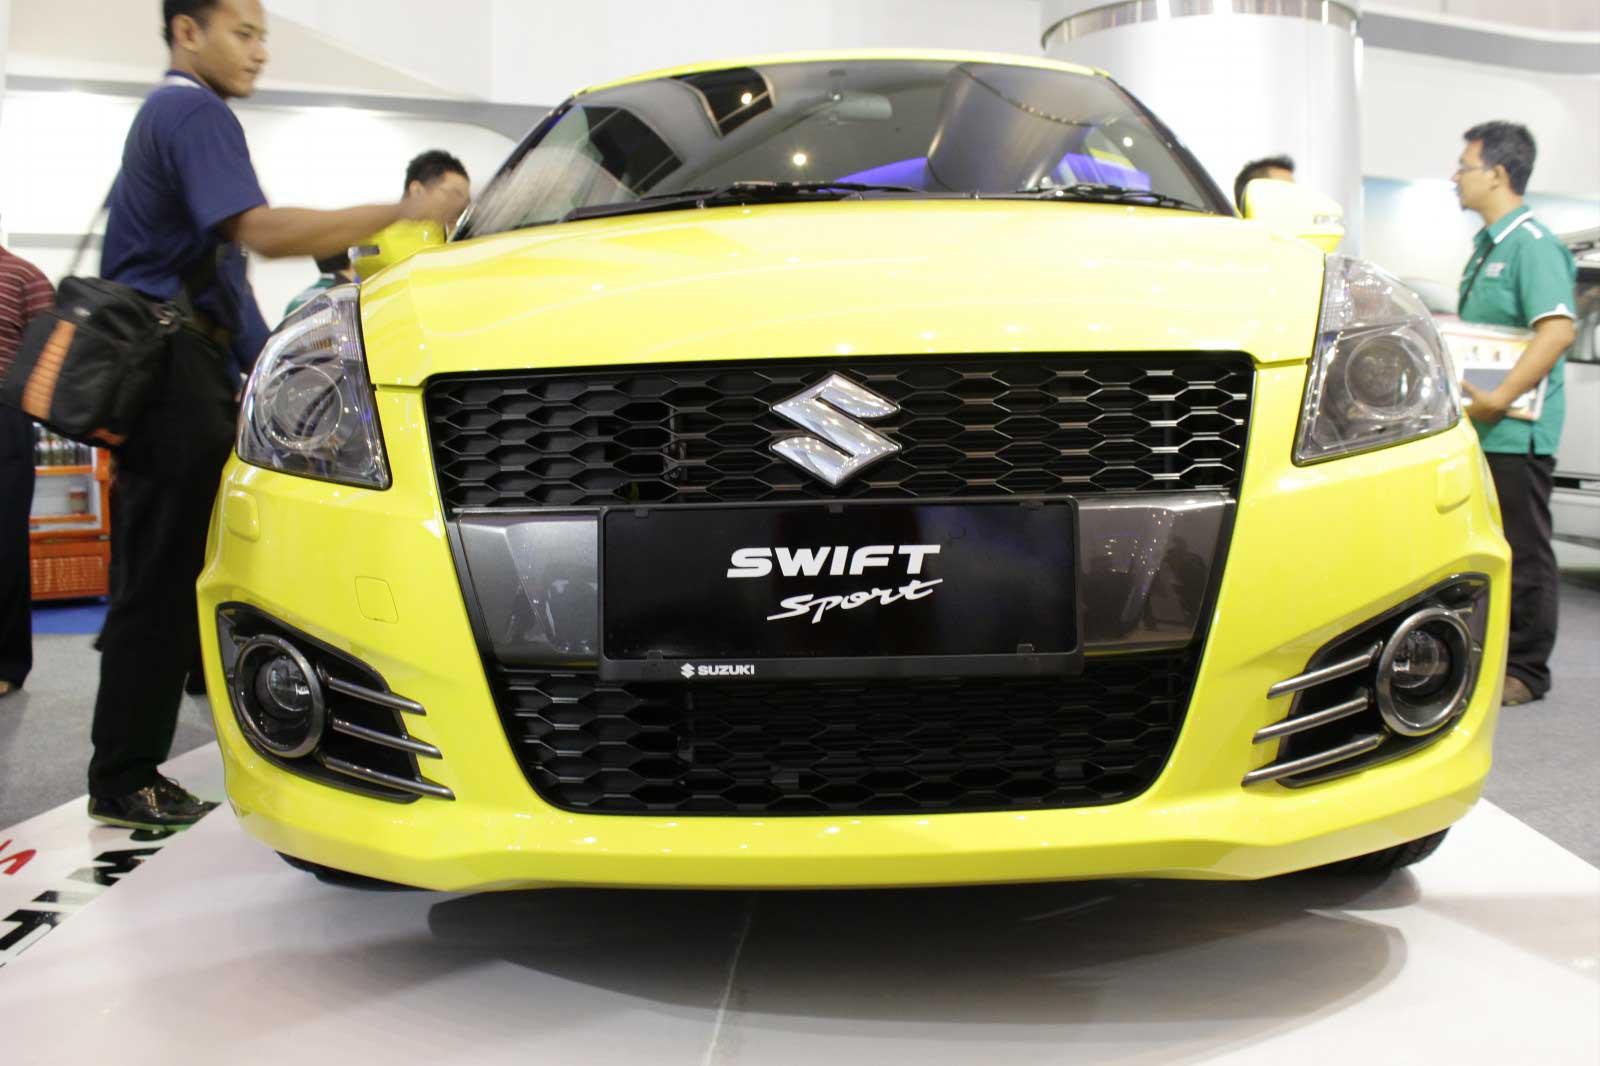 Suzuki Swift Sport front view